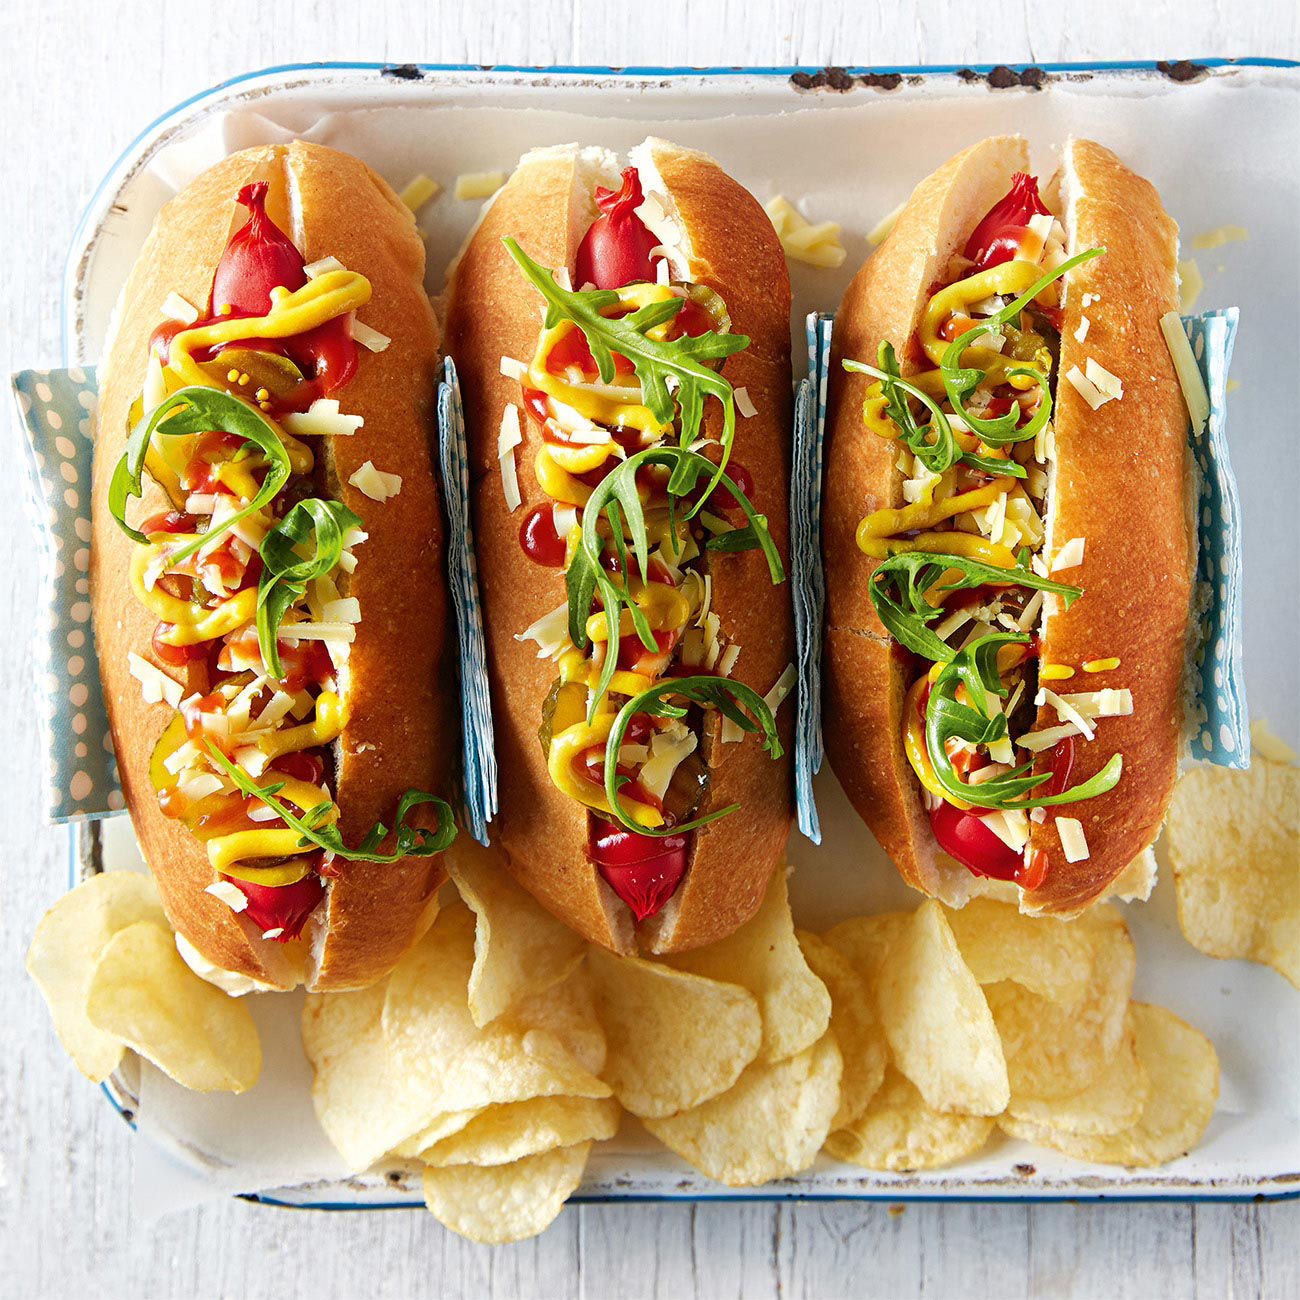 Hot Dog Recipes Without Bun | Deporecipe.co